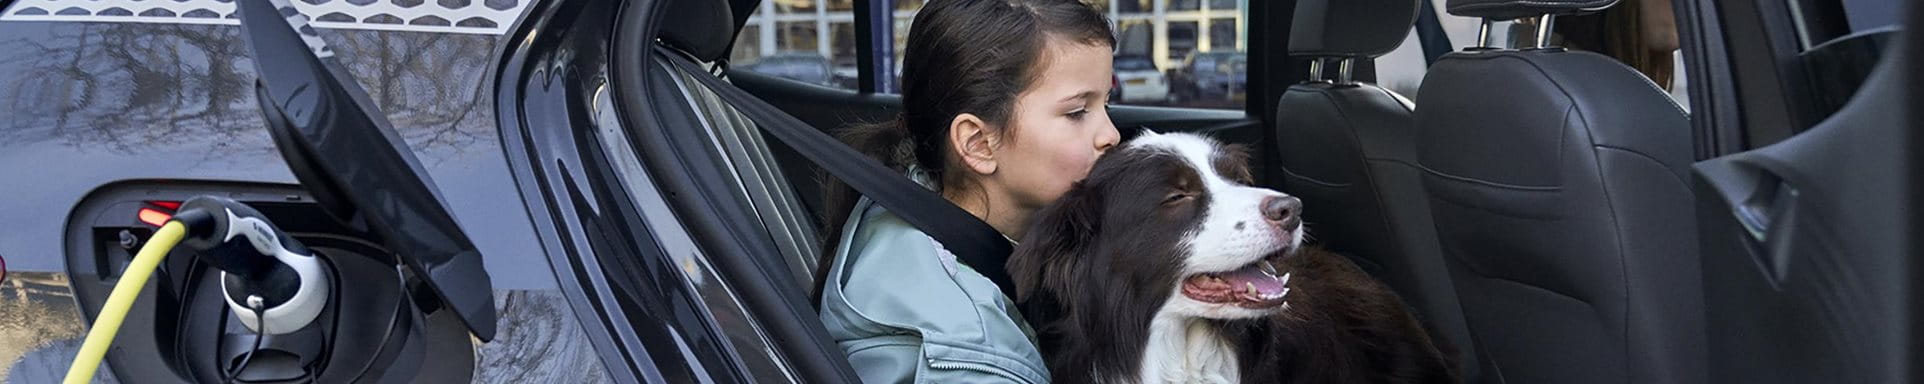 Maedchen kuschelt einen Hund im Auto